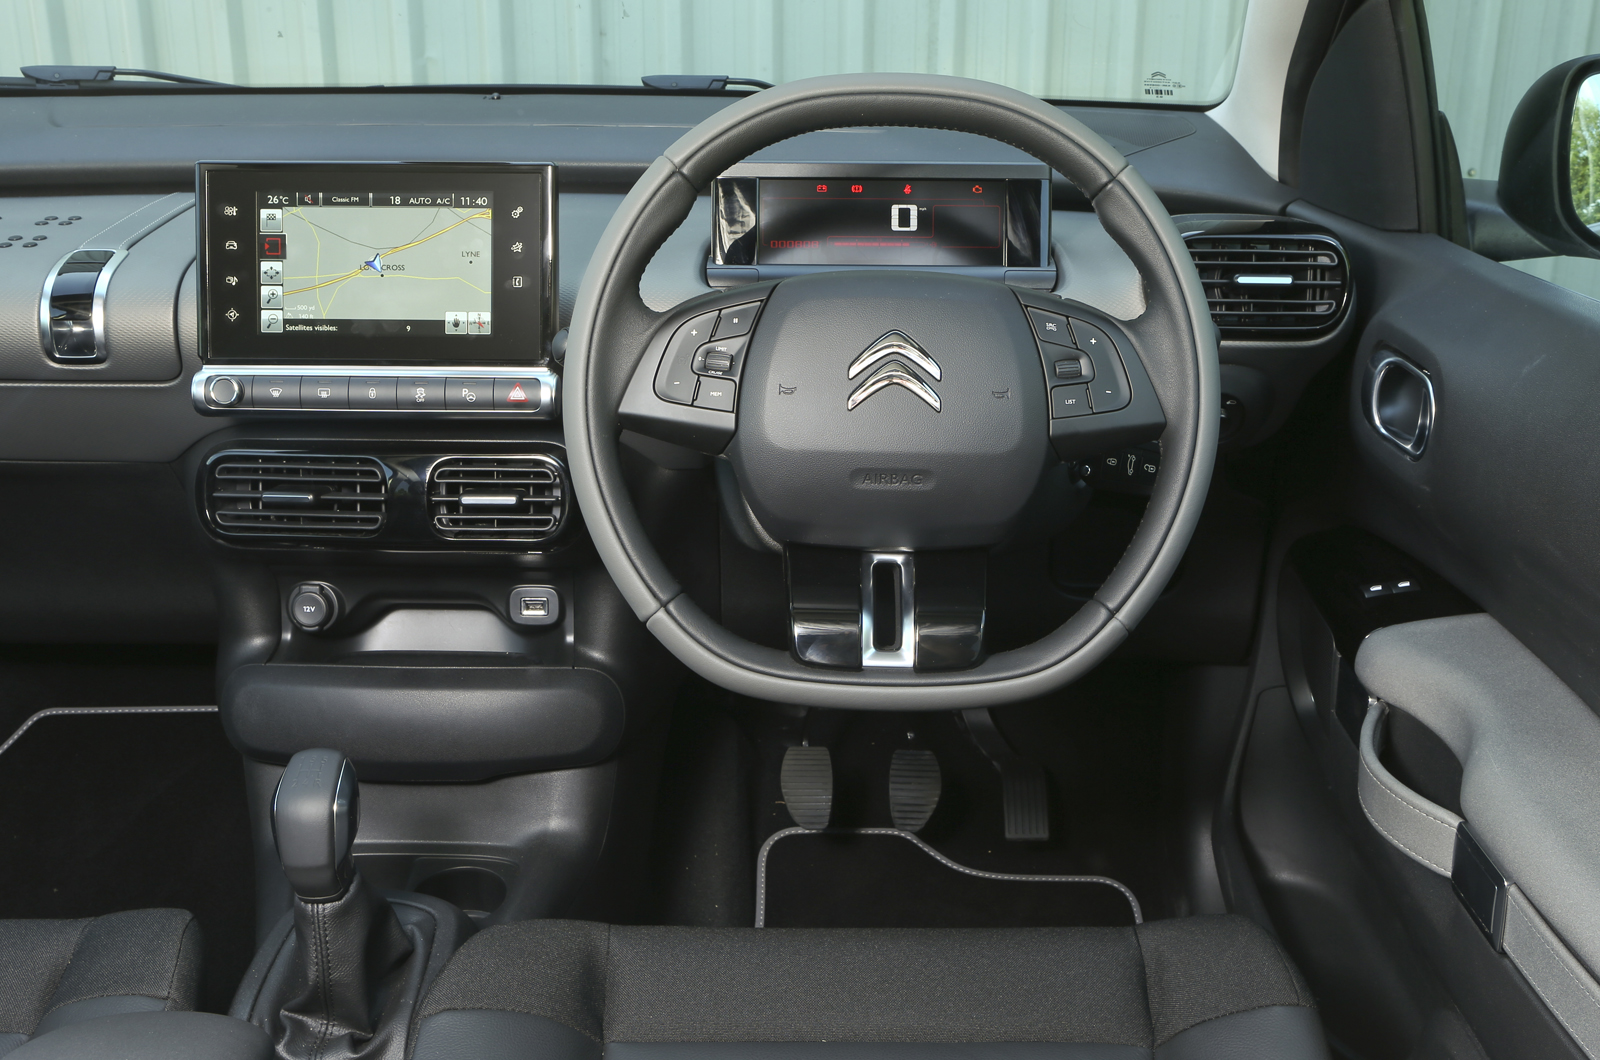 Citroën C4 Cactus interior